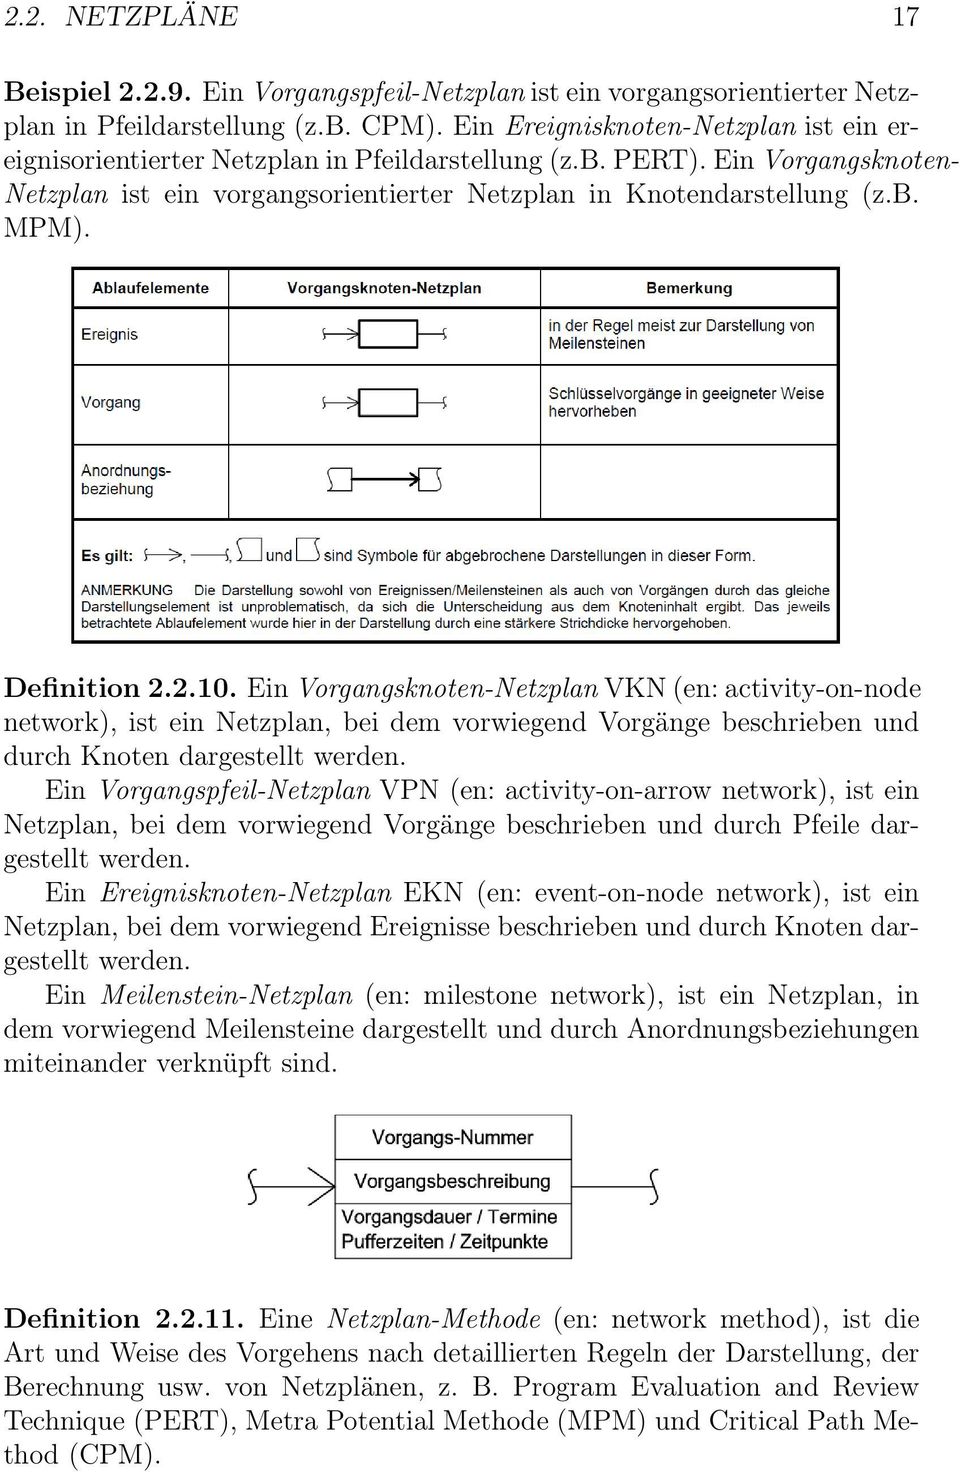 Definition 2.2.10. Ein Vorgangsknoten-Netzplan VKN (en: activity-on-node network), ist ein Netzplan, bei dem vorwiegend Vorgänge beschrieben und durch Knoten dargestellt werden.